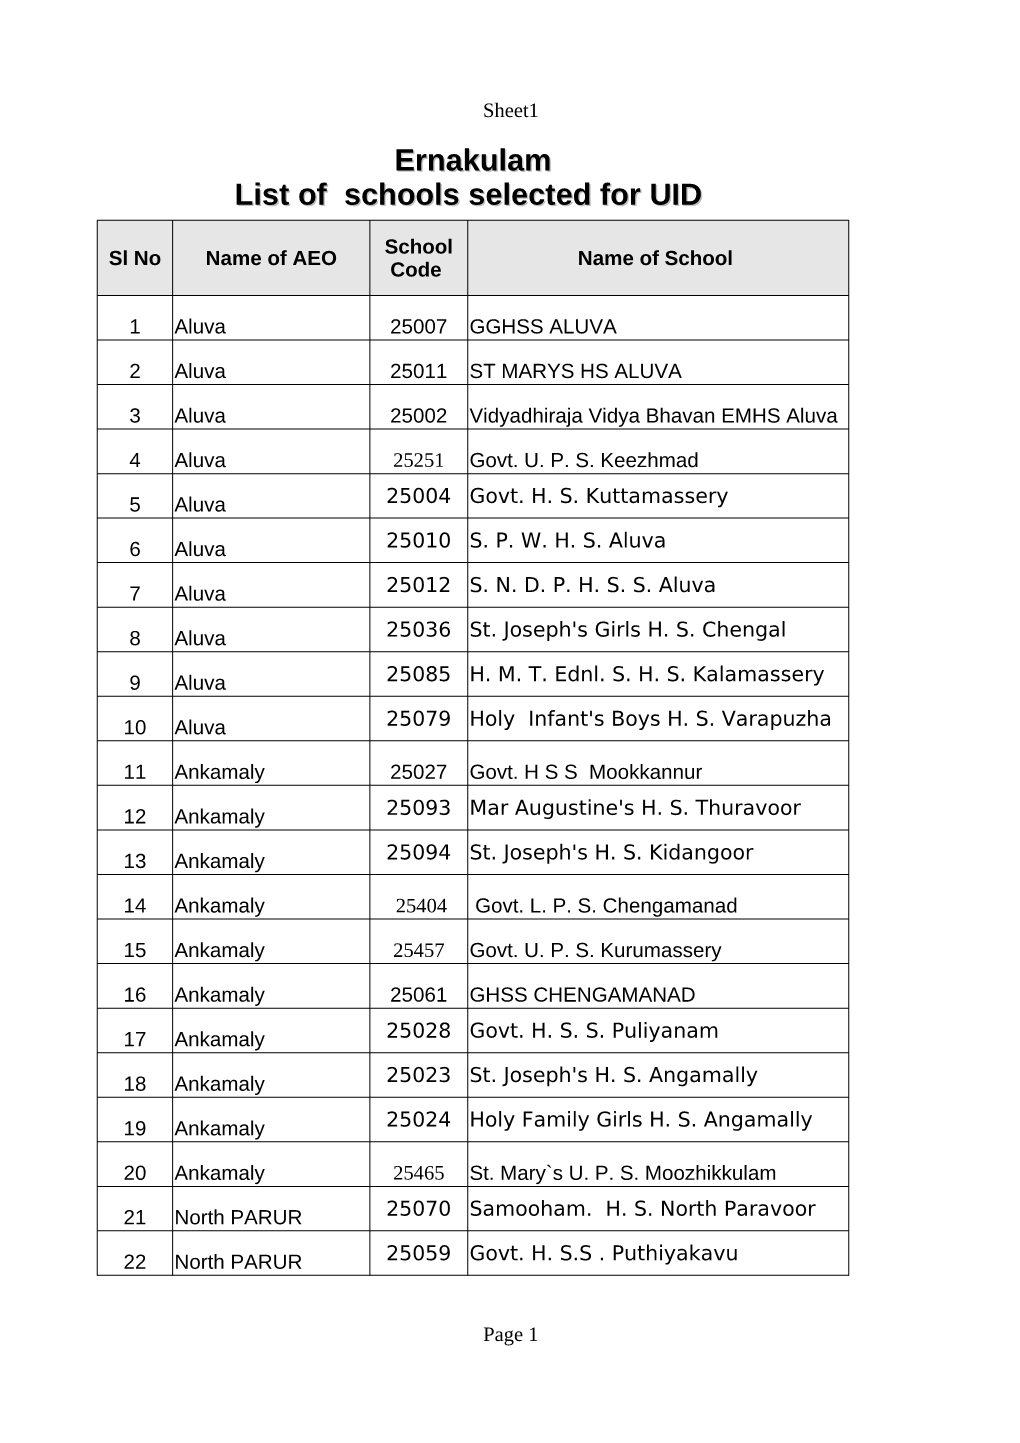 Ernakulam List of Schools Selected for UID